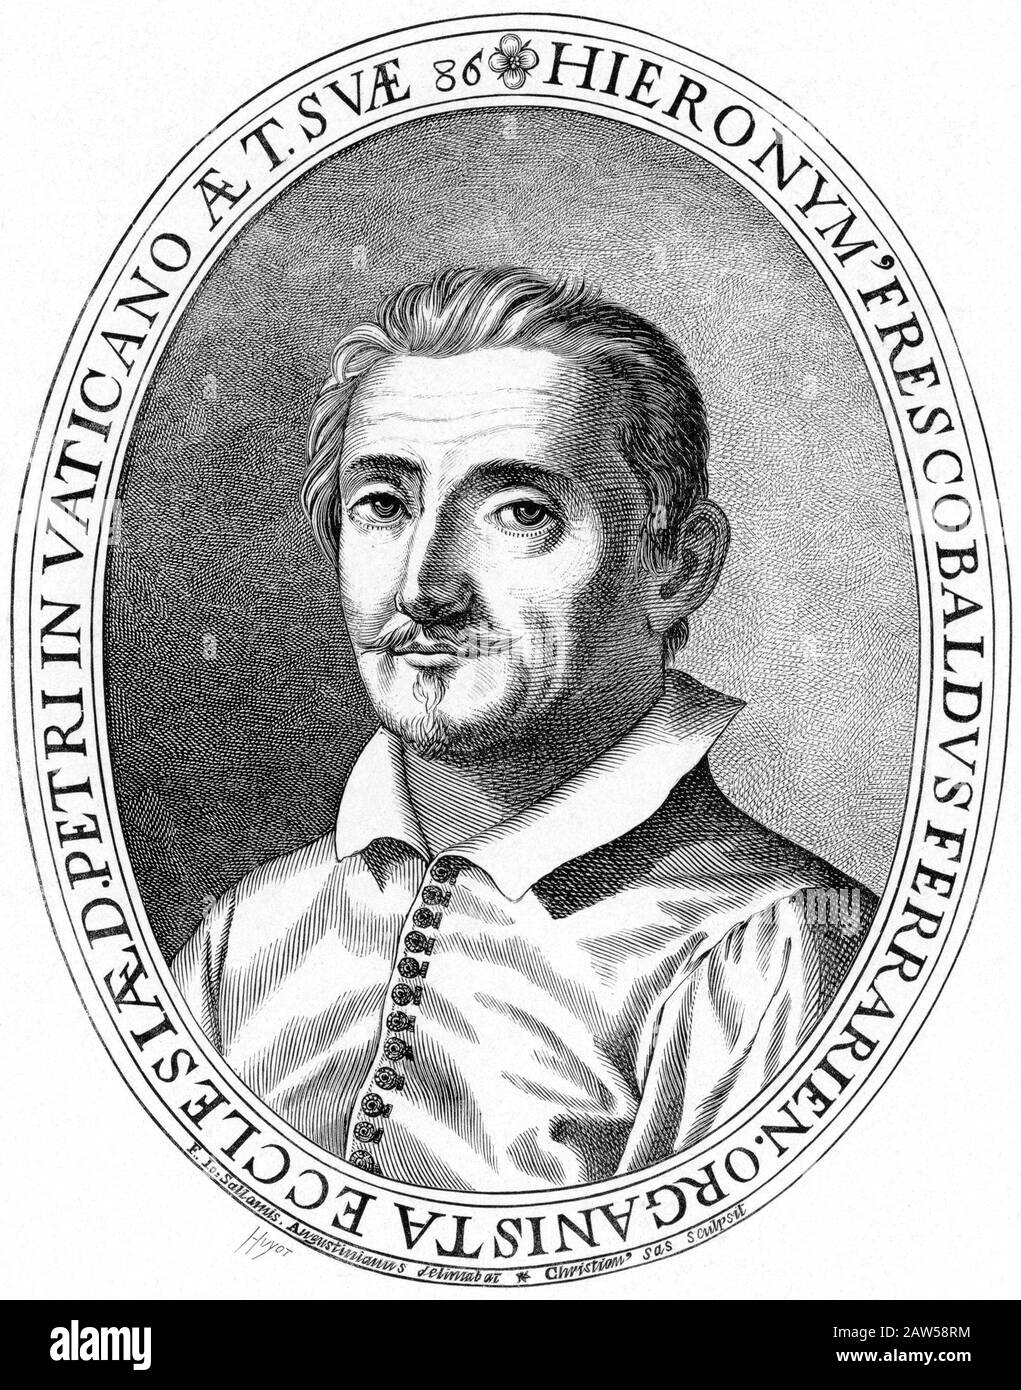 1669 , ROMA , ITALIE : la célèbre musique italienne compositeur et organiste GIROLAMO FRESCOBALDI ( 1583 - 1643 ). - GEROLAMO - ORGANO - ORGANIS Banque D'Images